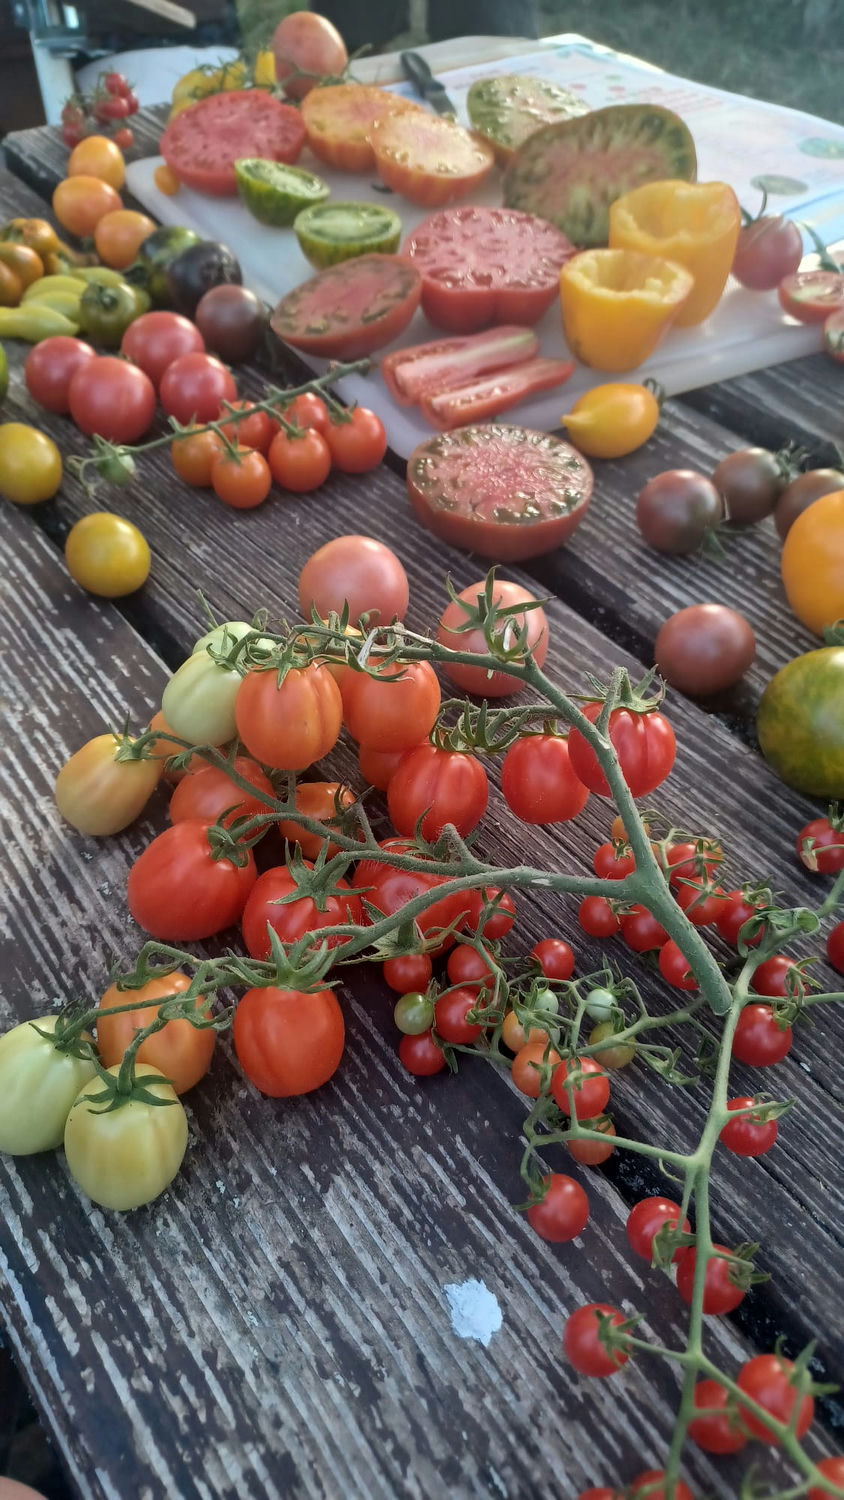 Atelier tomate, découverte tomate, dégustation tomates